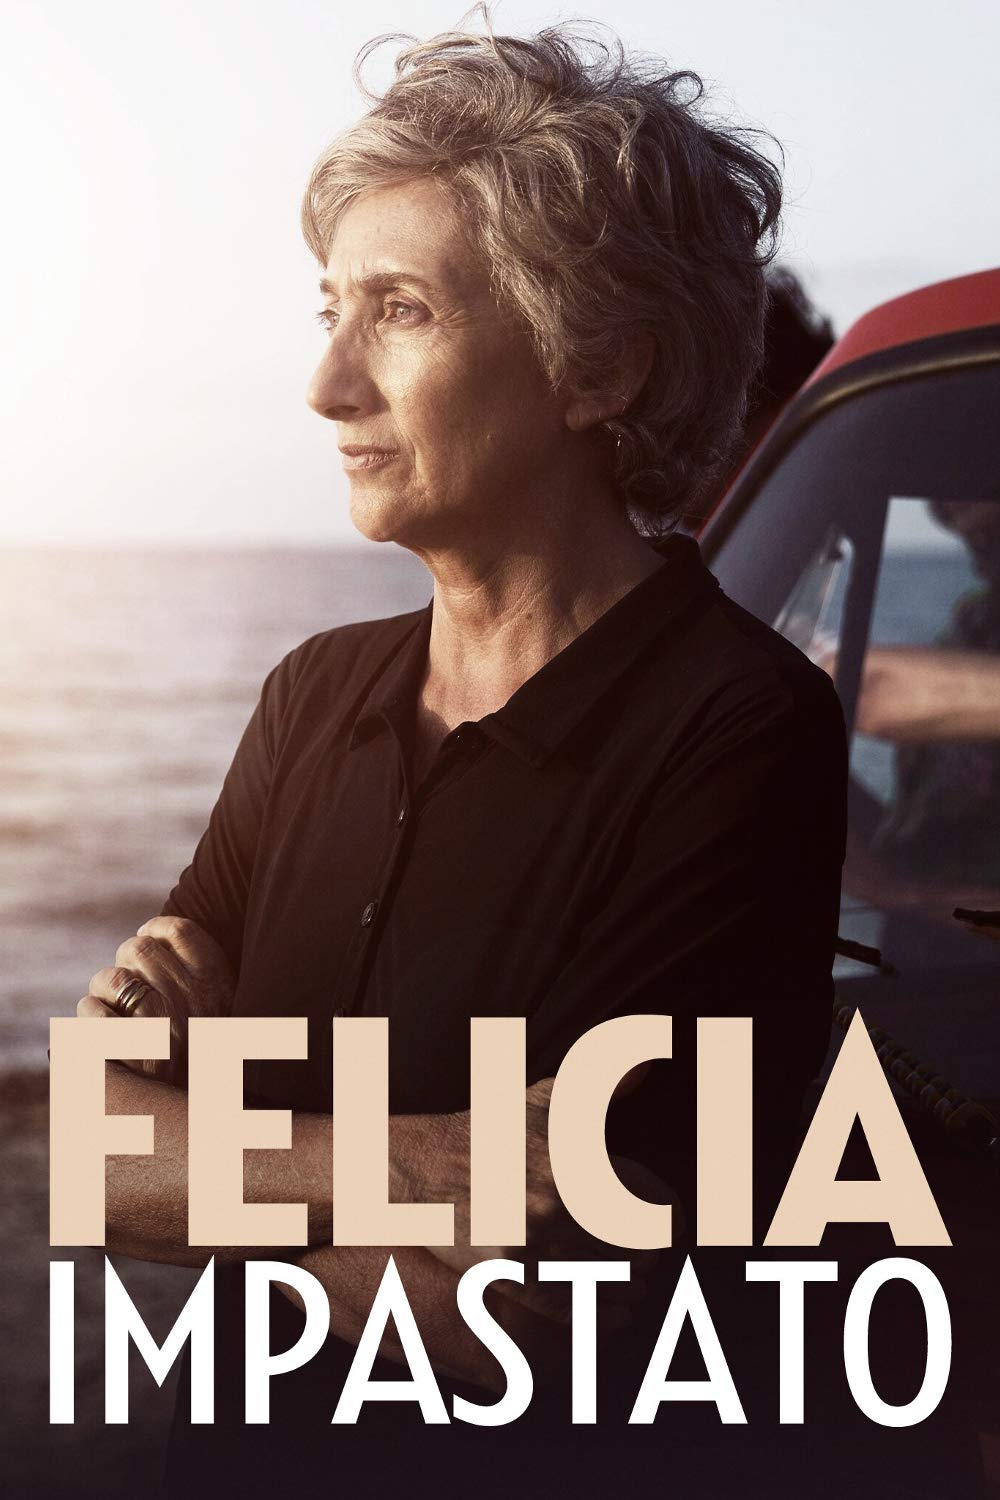 Felicia Impastato [HD] (2016)